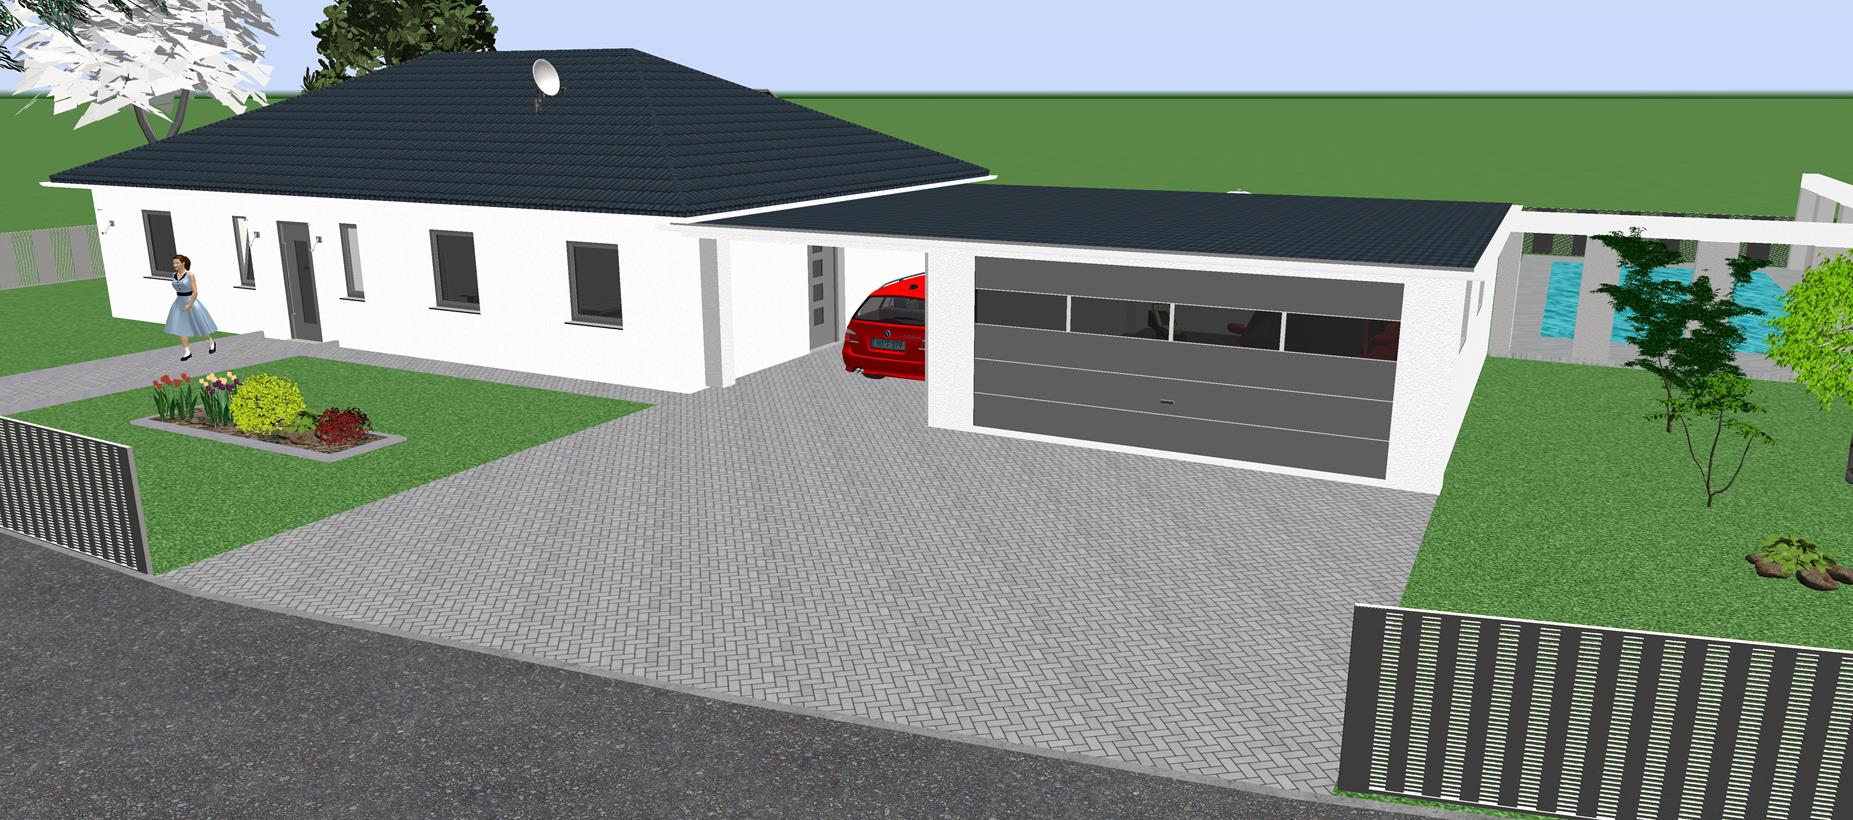 Wir bauen ein Danwood Haus in Sternberg/MV